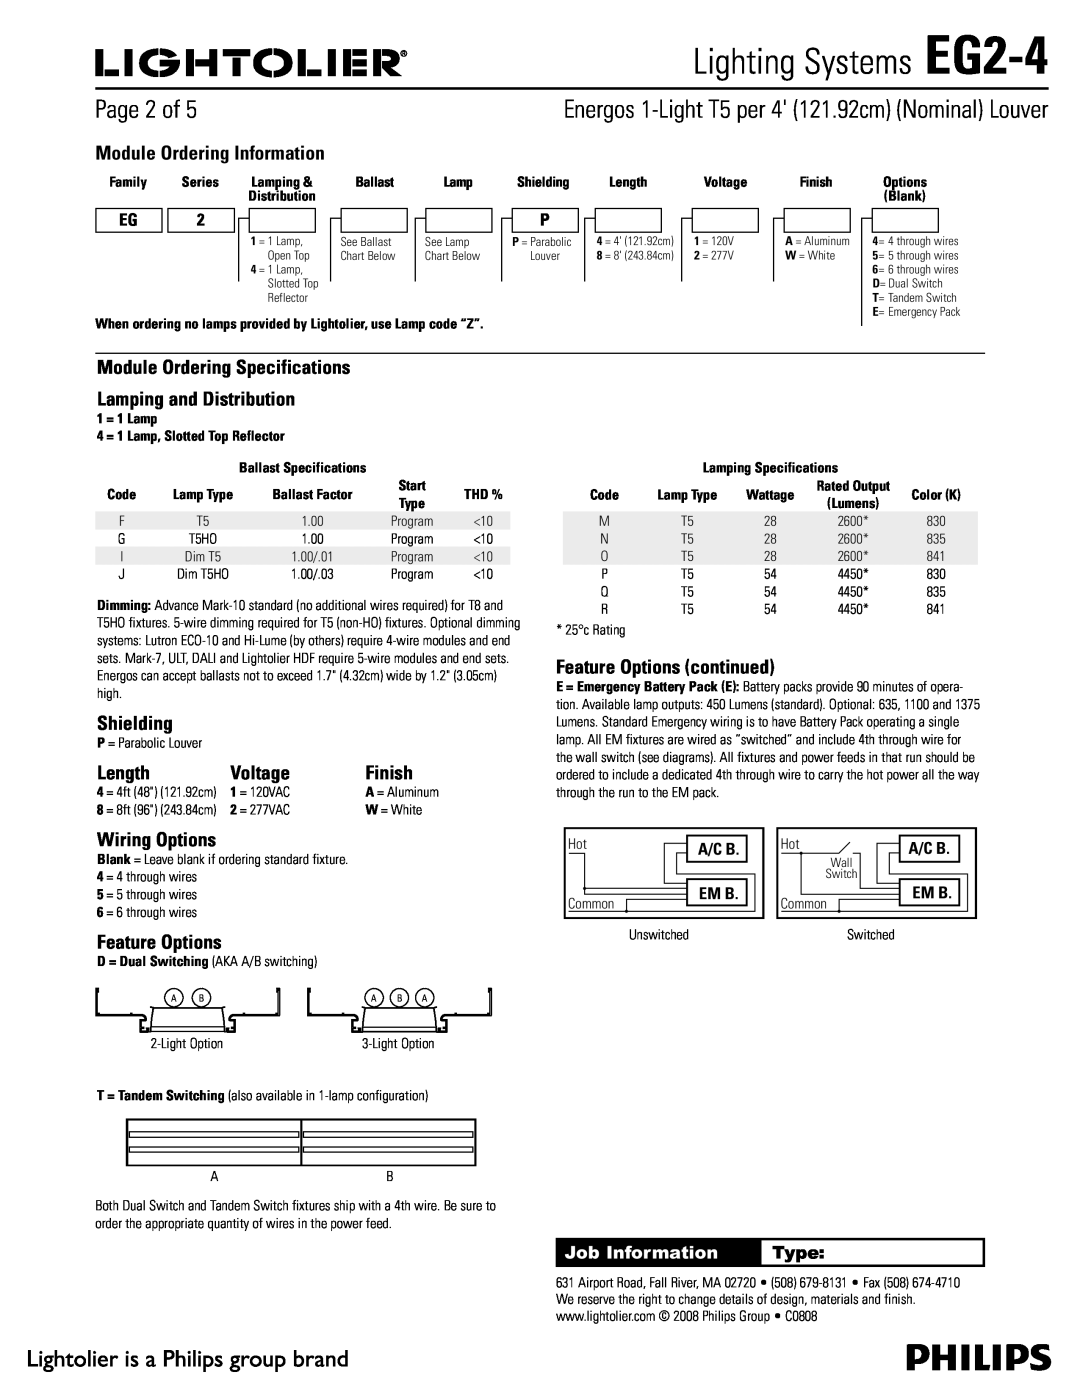 Lightolier specifications 1BHFPG, Lighting Systems EG2-4 